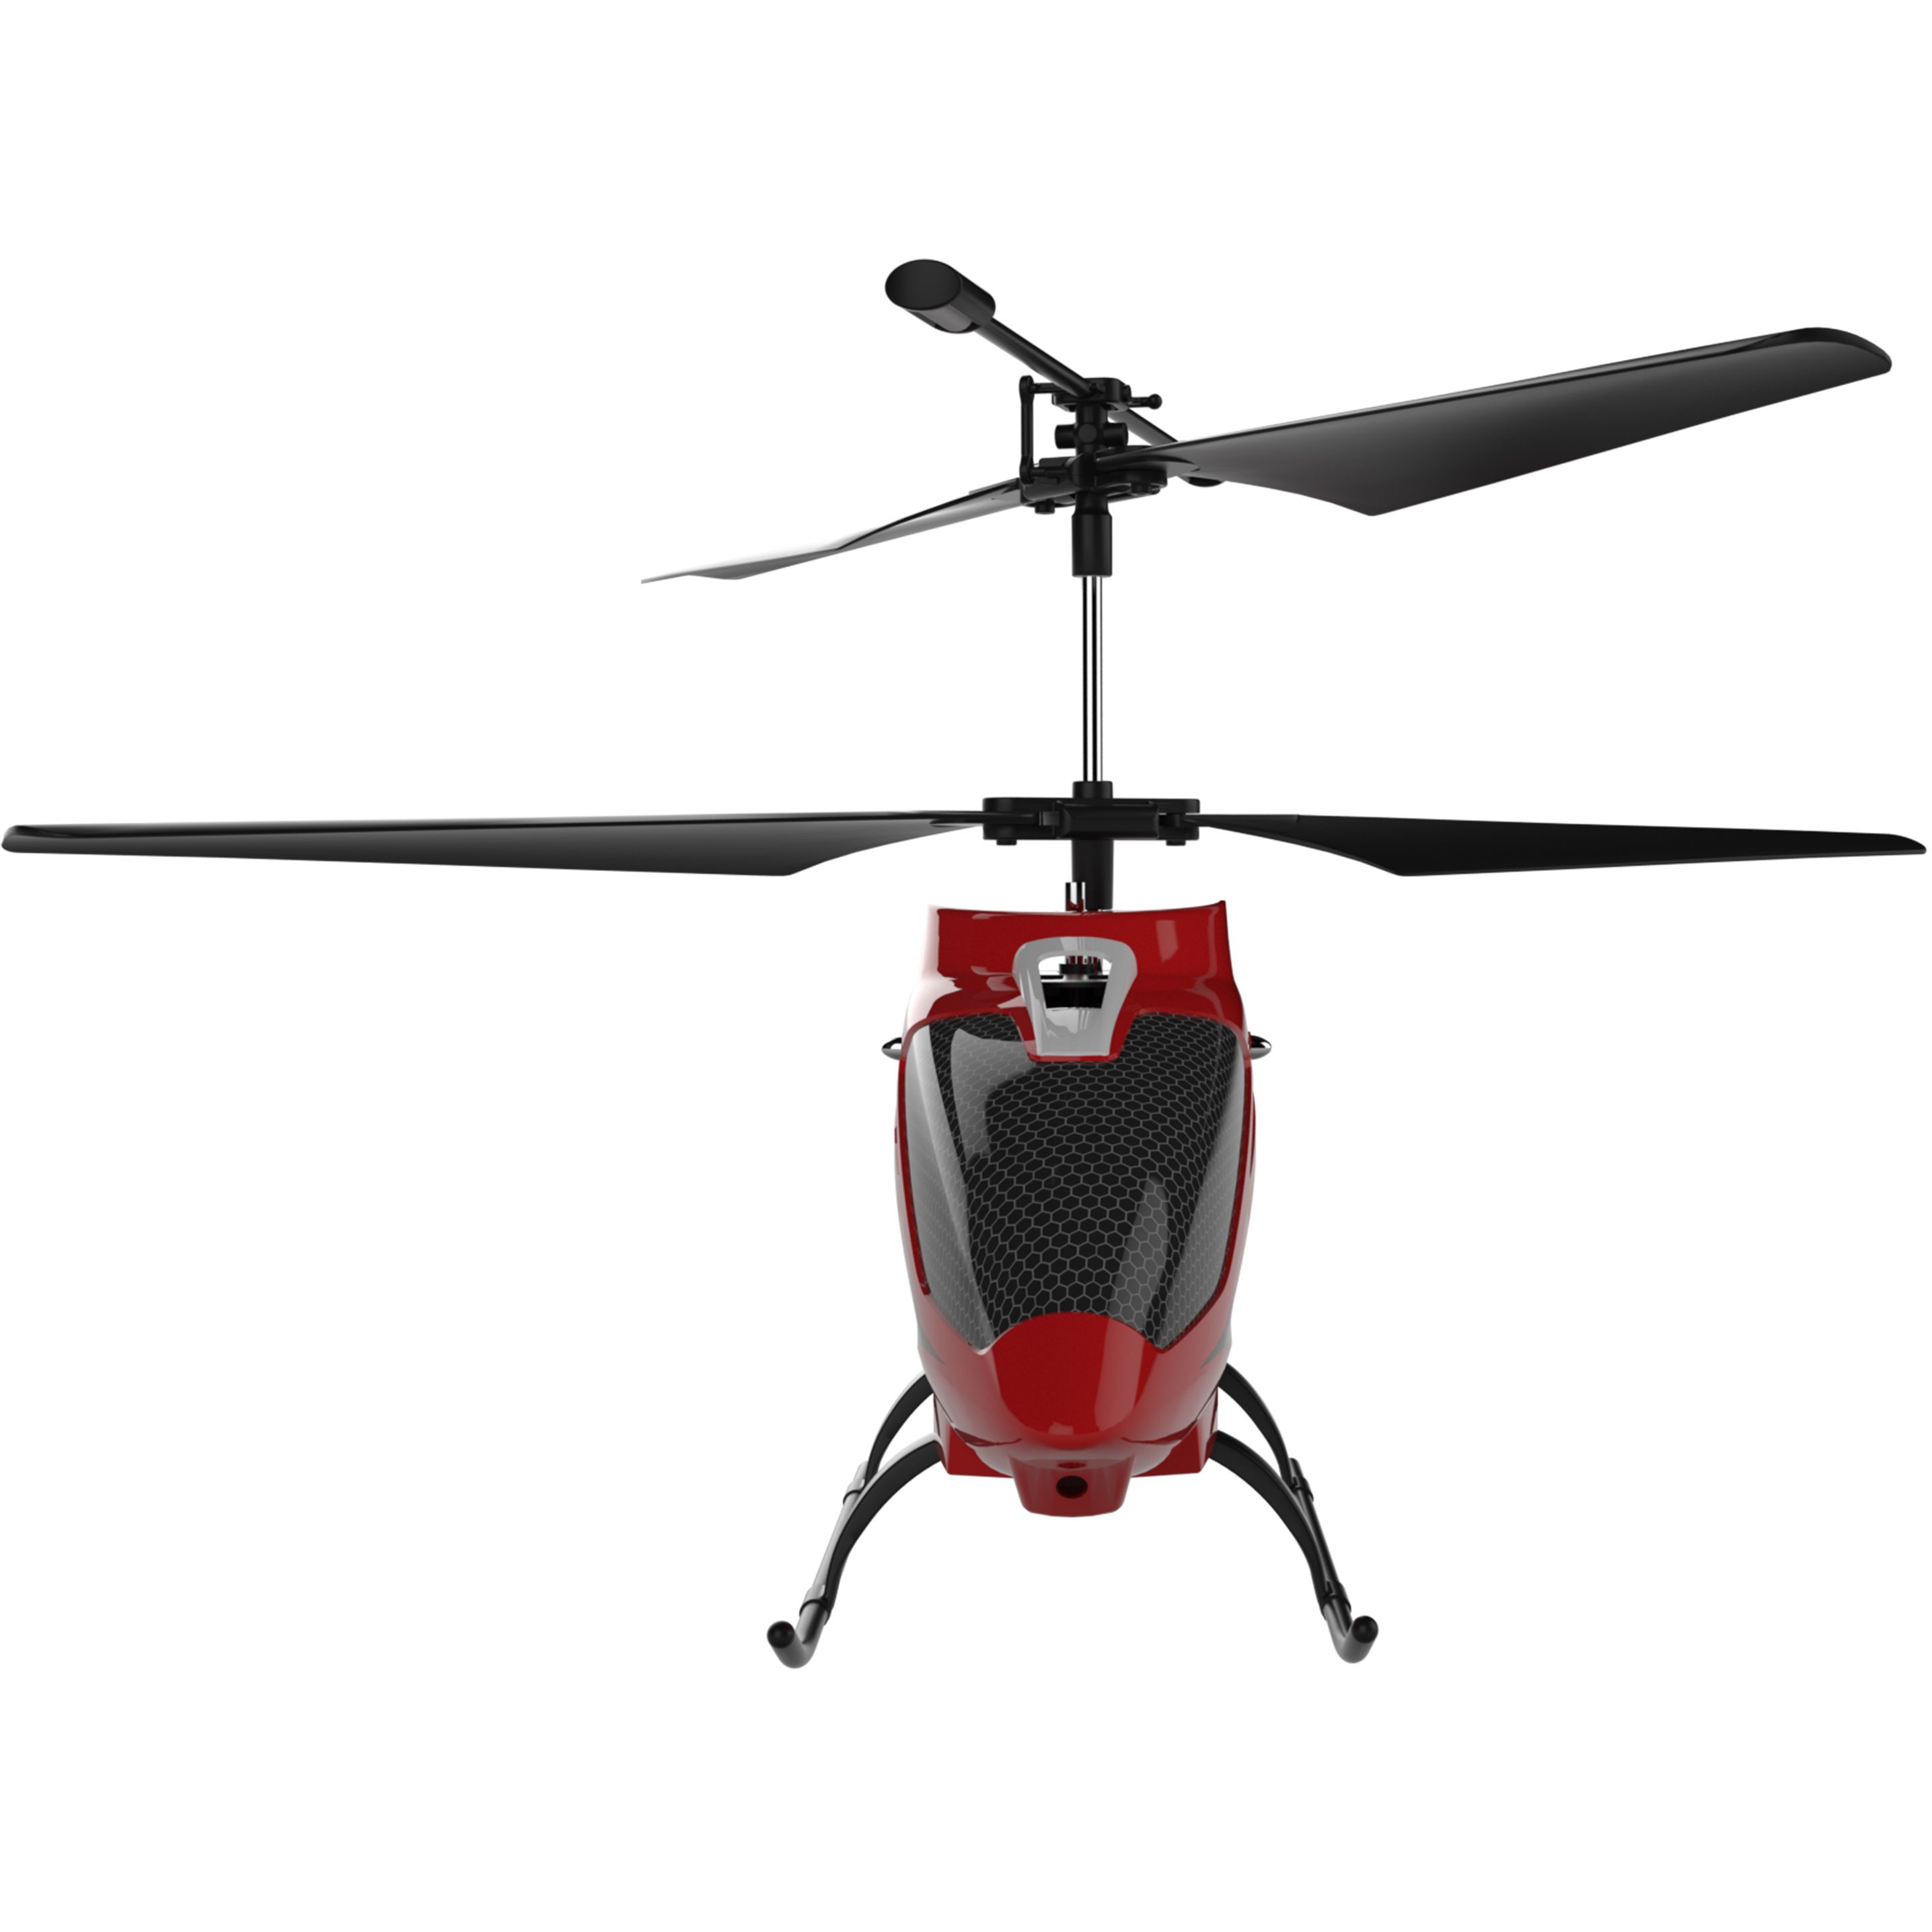 Іграшка на радіокеруванні Syma Гелікоптер 22 см (S39H) - фото 3